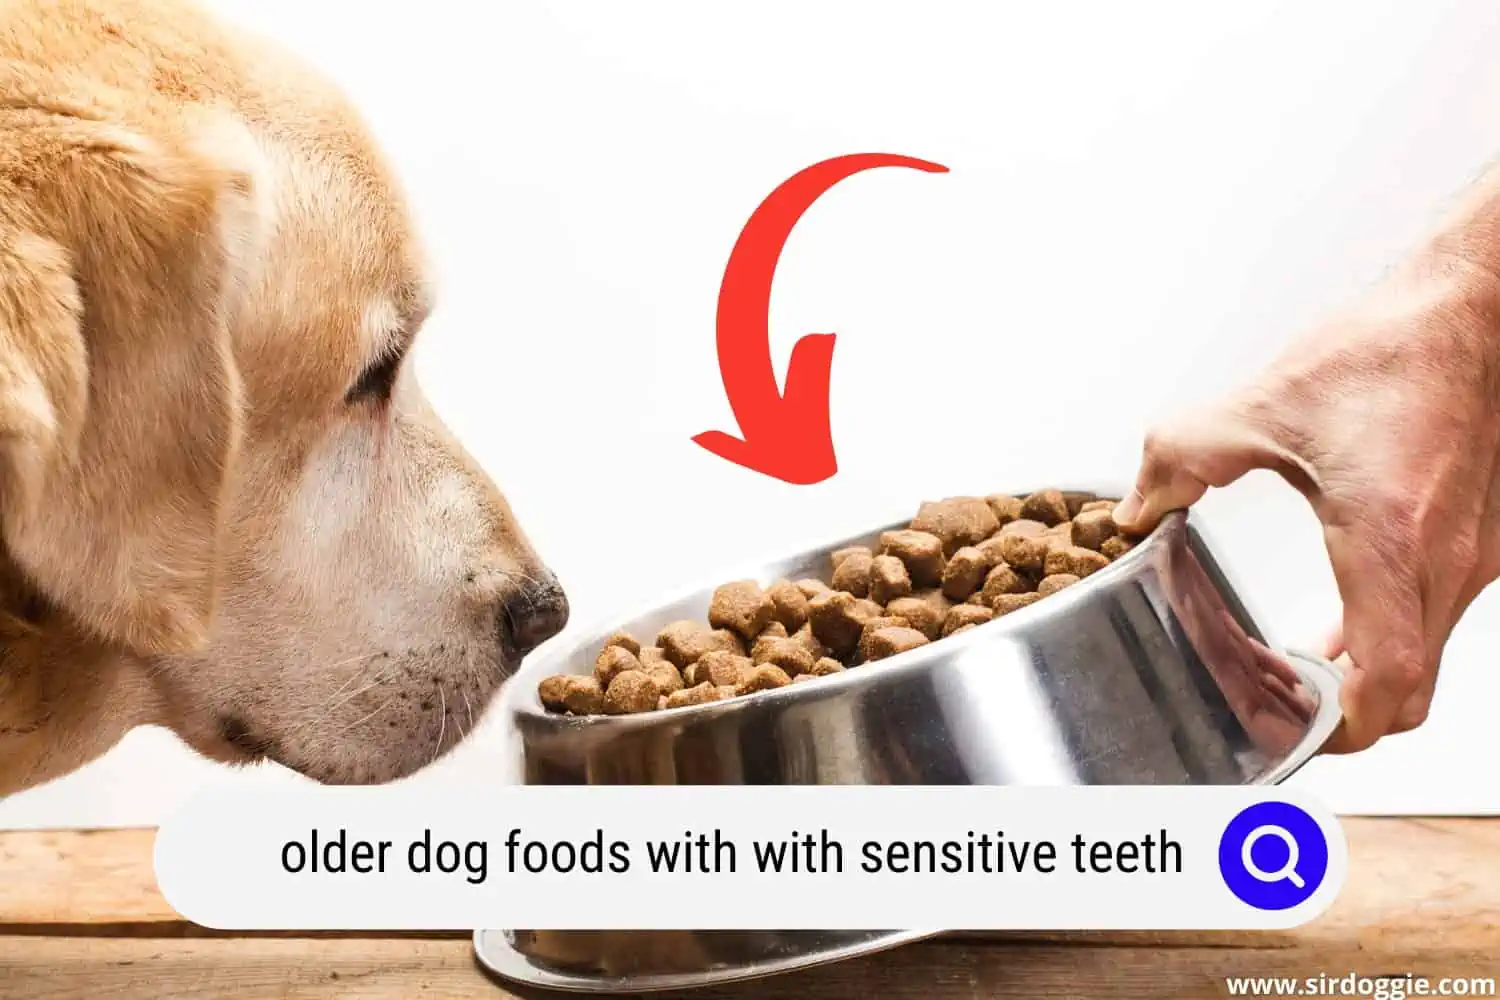 Old dog smelling dog food in a dog bowl